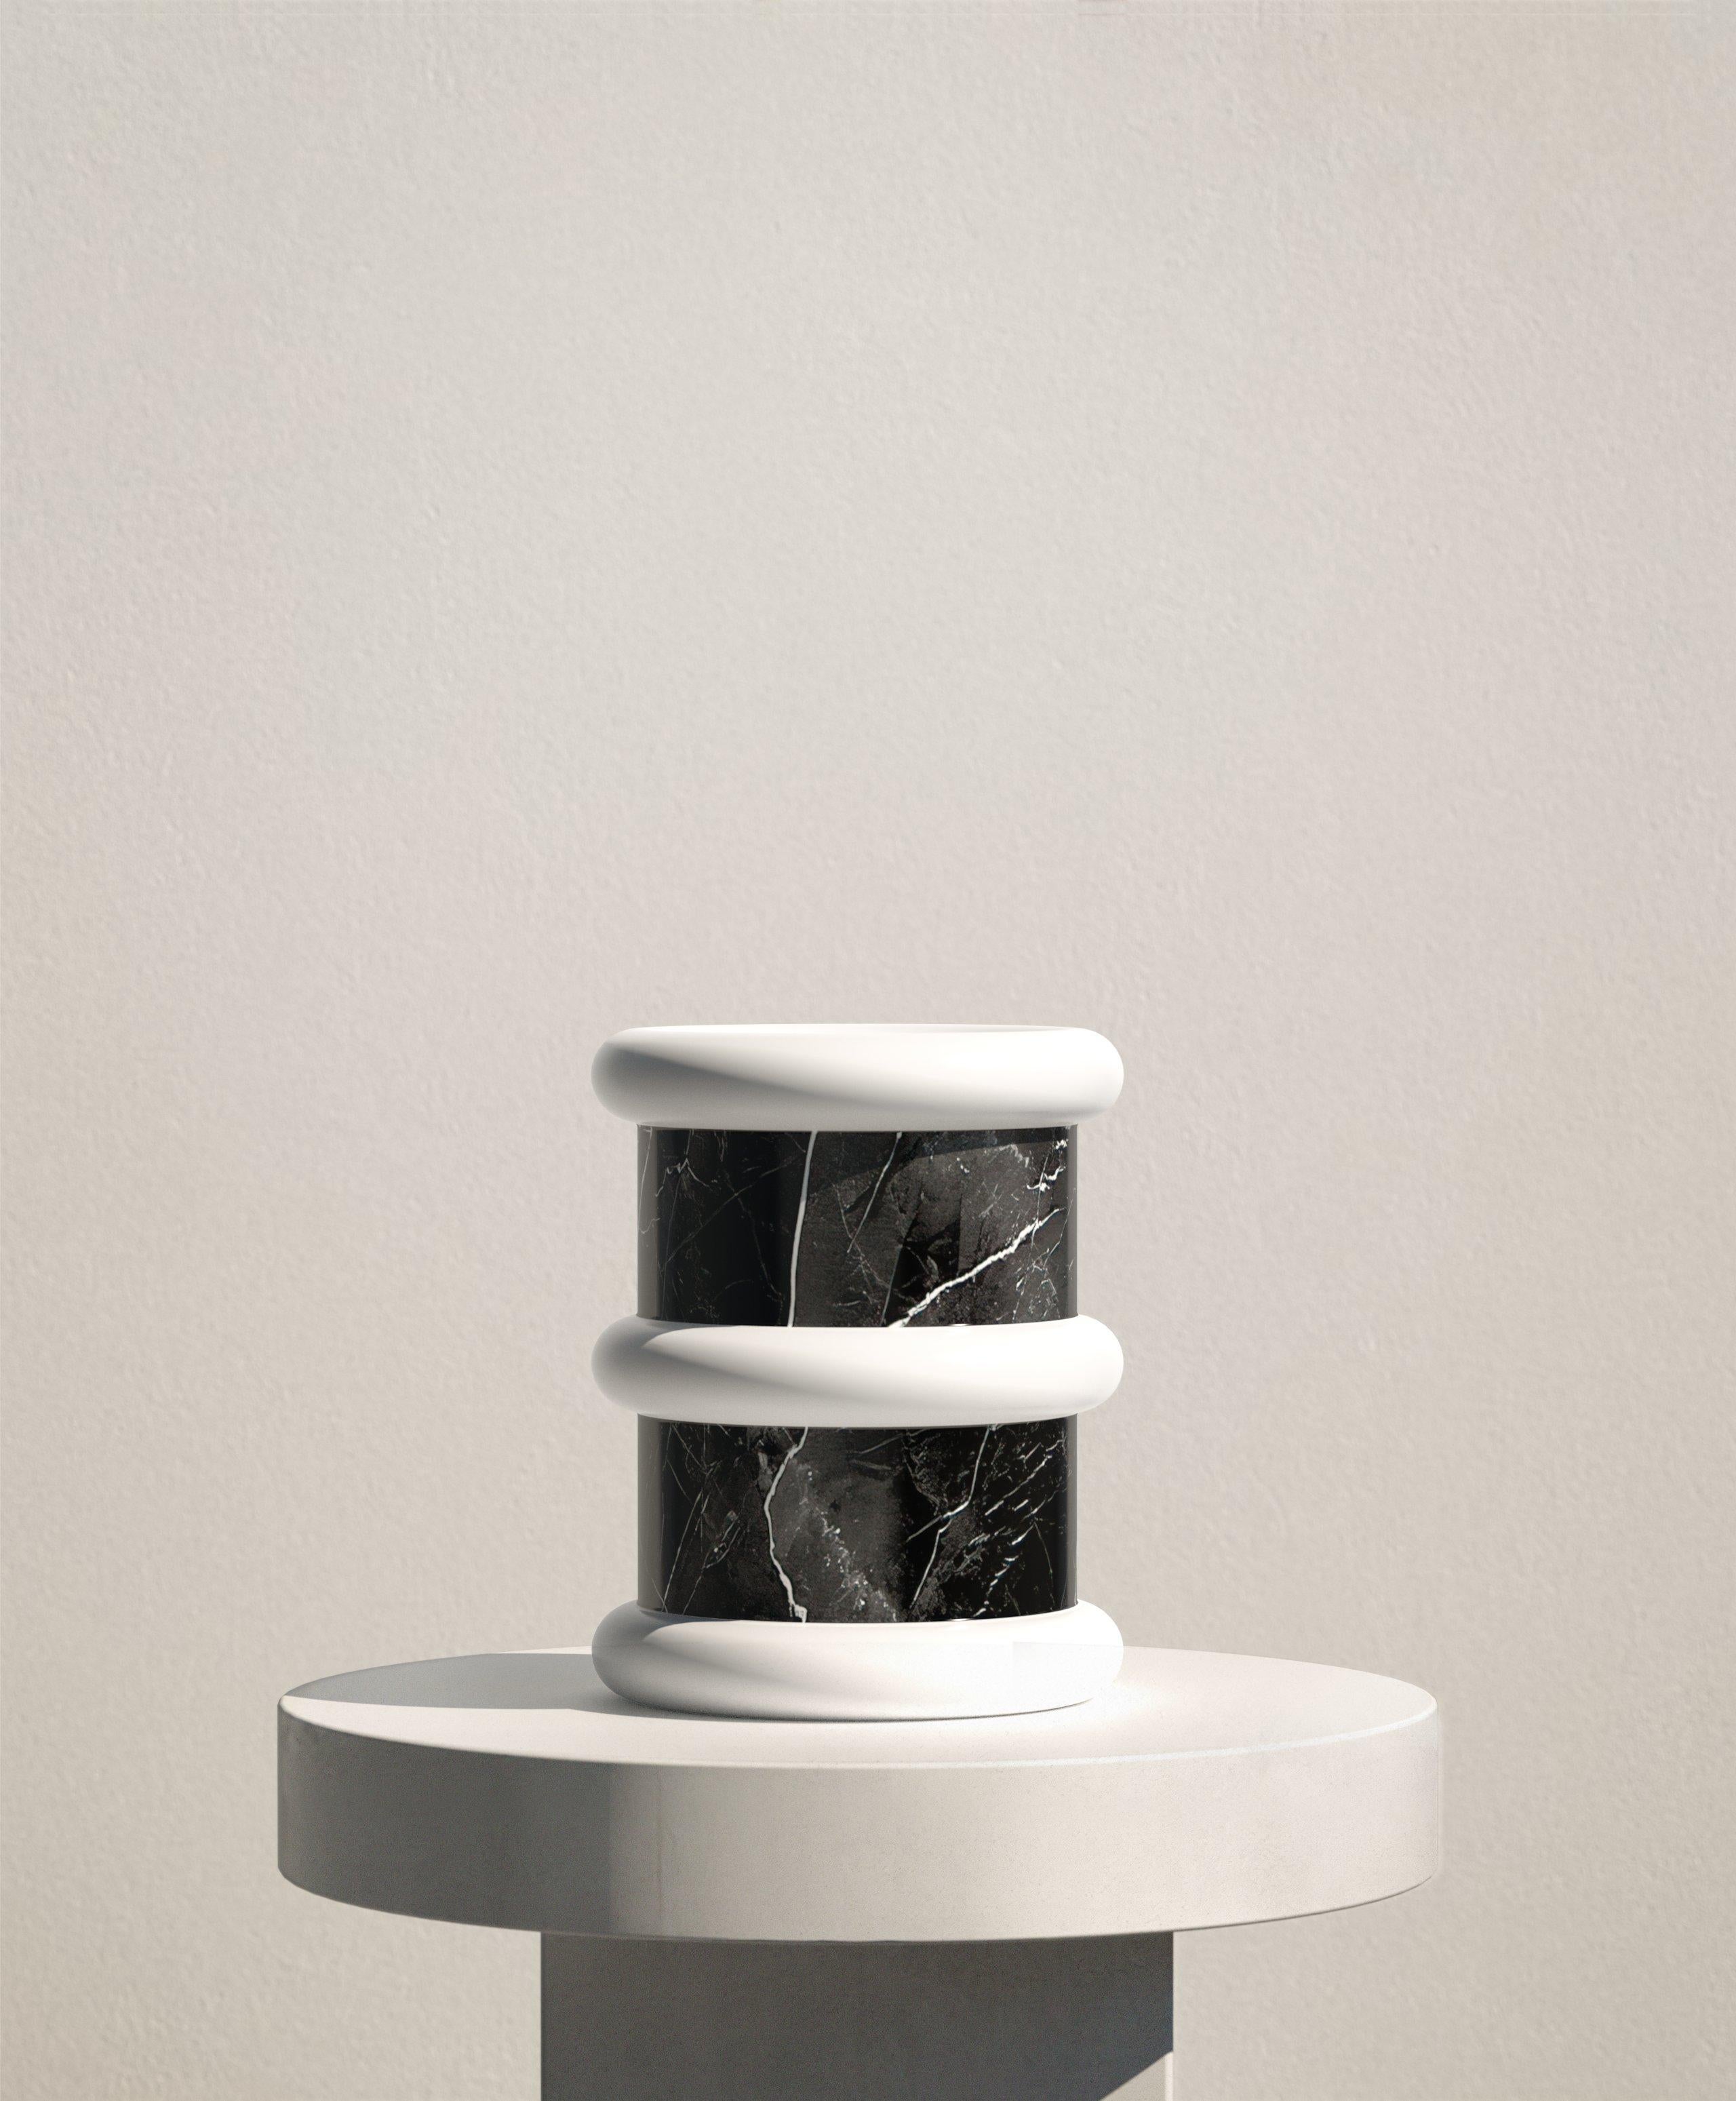 Ce vase minimaliste et ludique dans une combinaison audacieuse de marbre noir et blanc est un article parfait pour ajouter un accent authentique à tout espace intérieur. Fabriqués en Italie à partir de marbre naturel, les vases Lumière offrent des